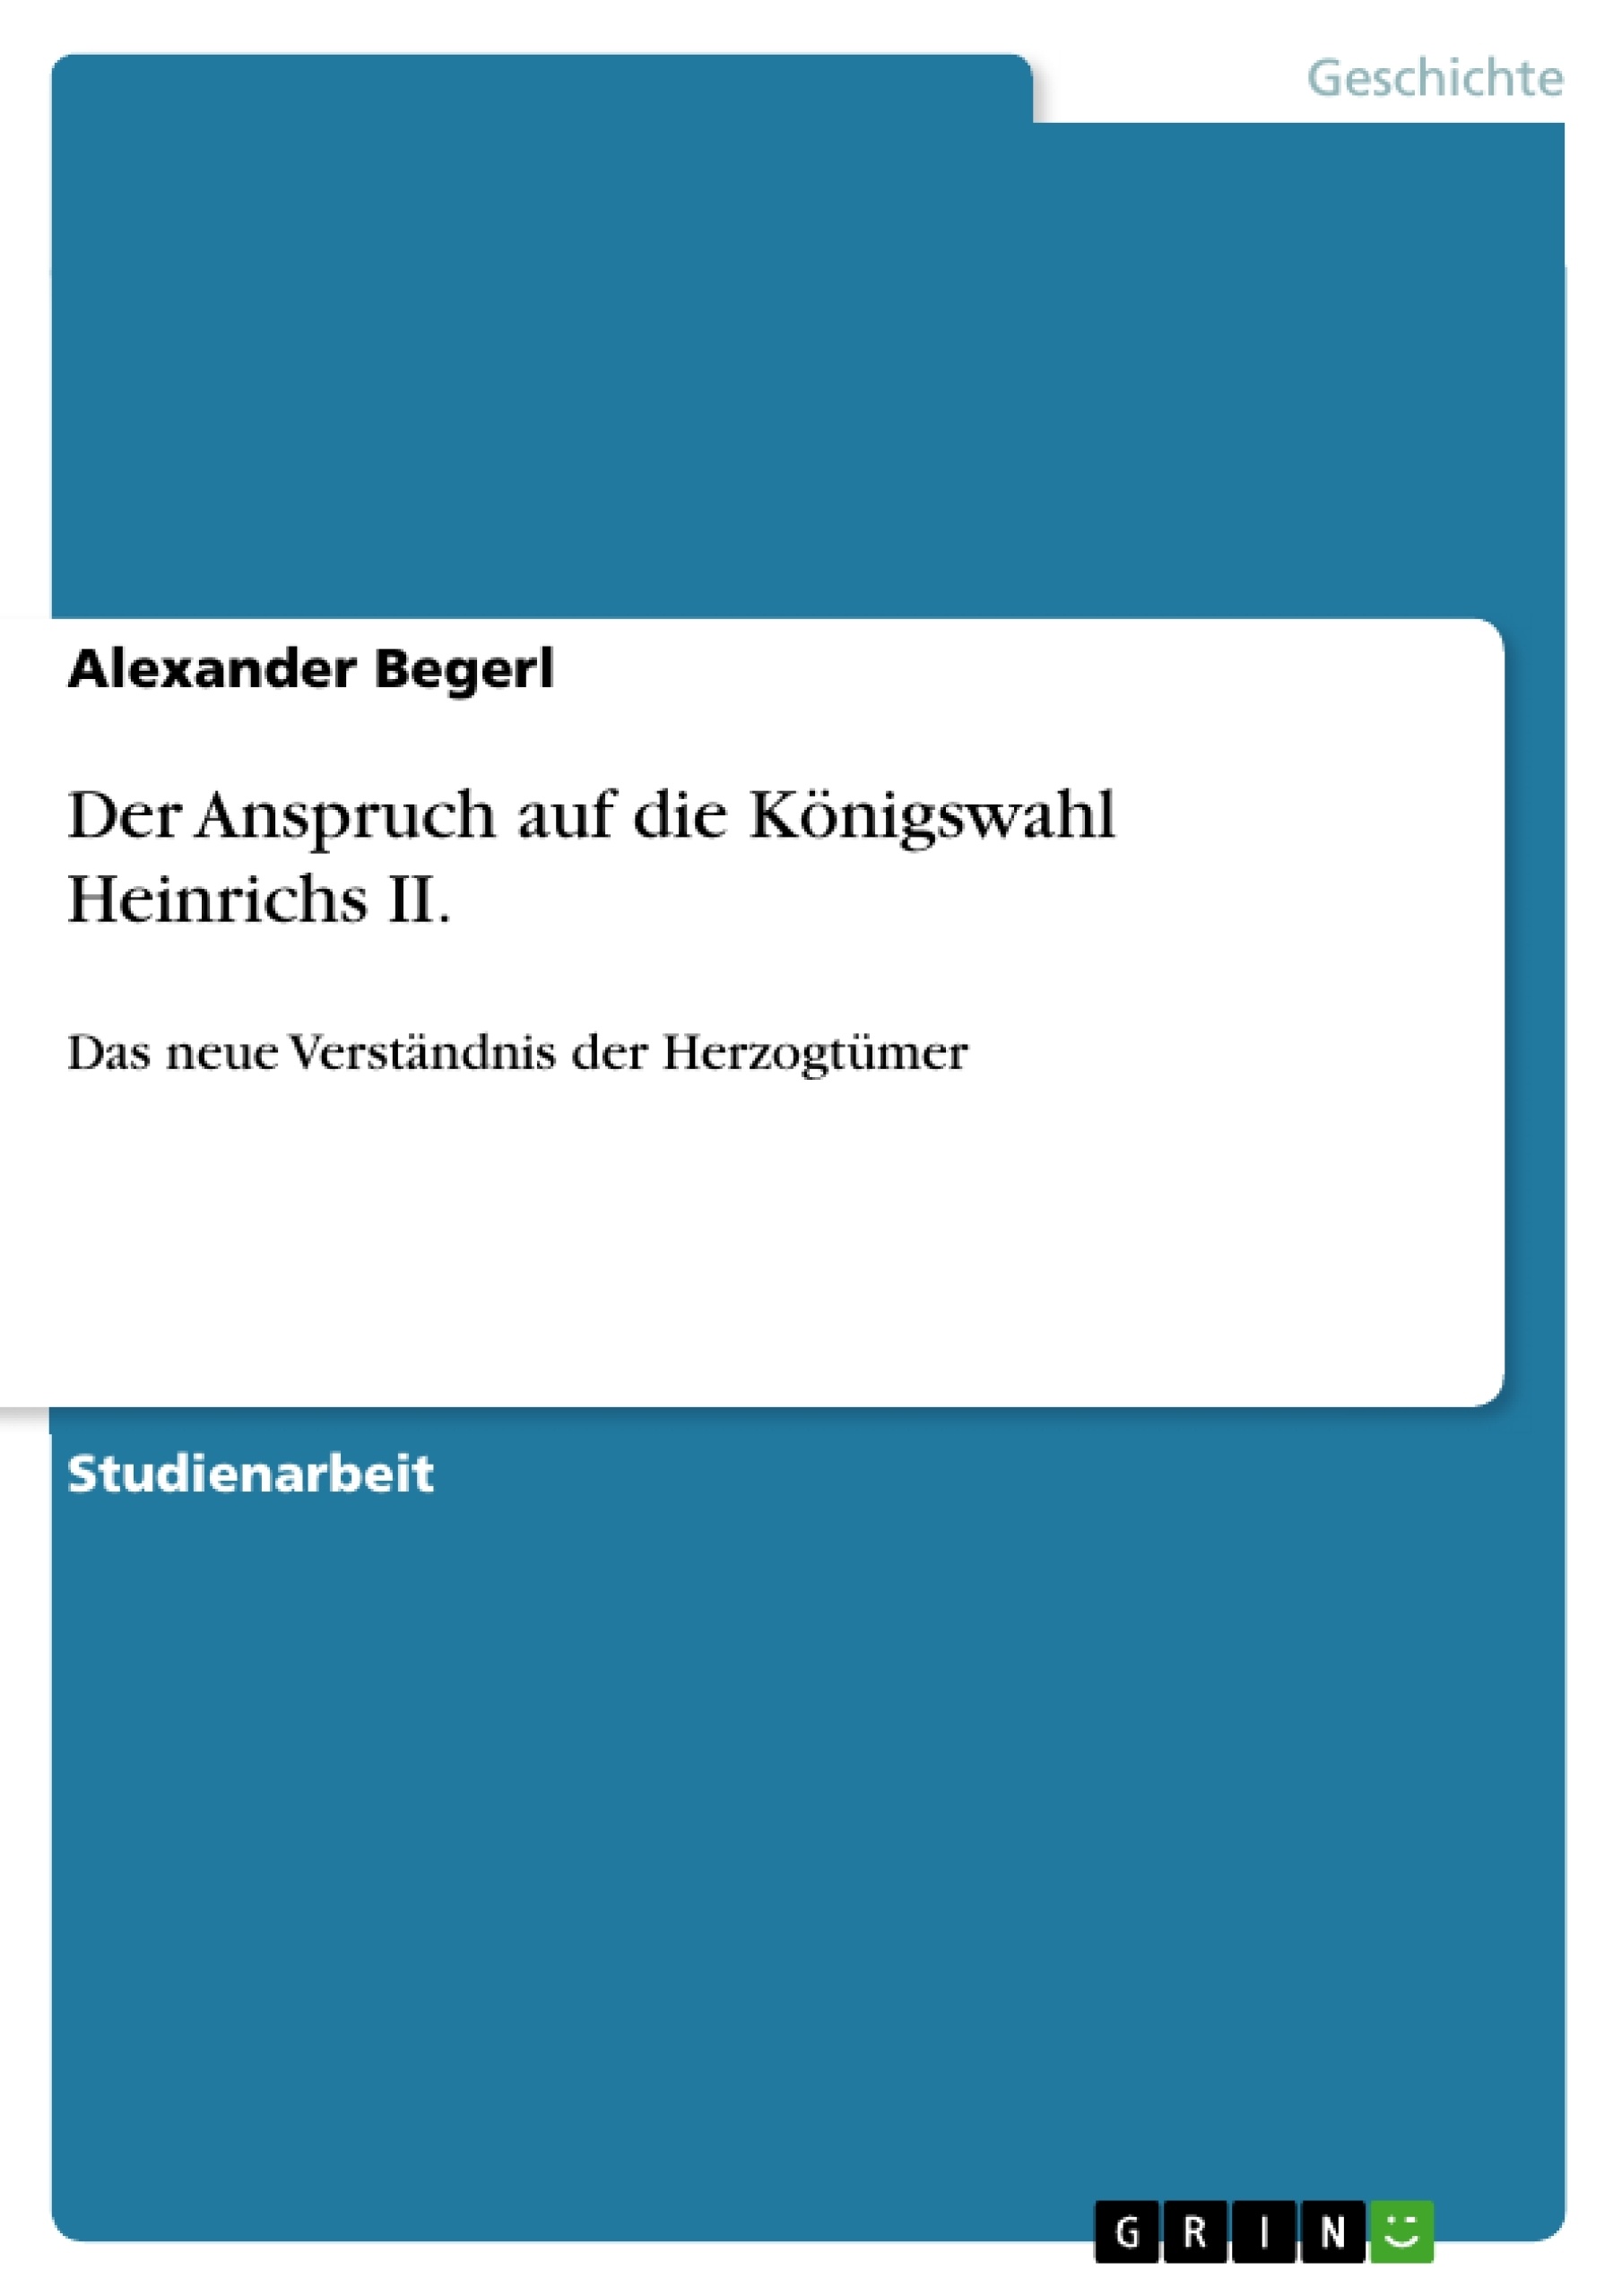 Título: Der Anspruch auf die Königswahl Heinrichs II.